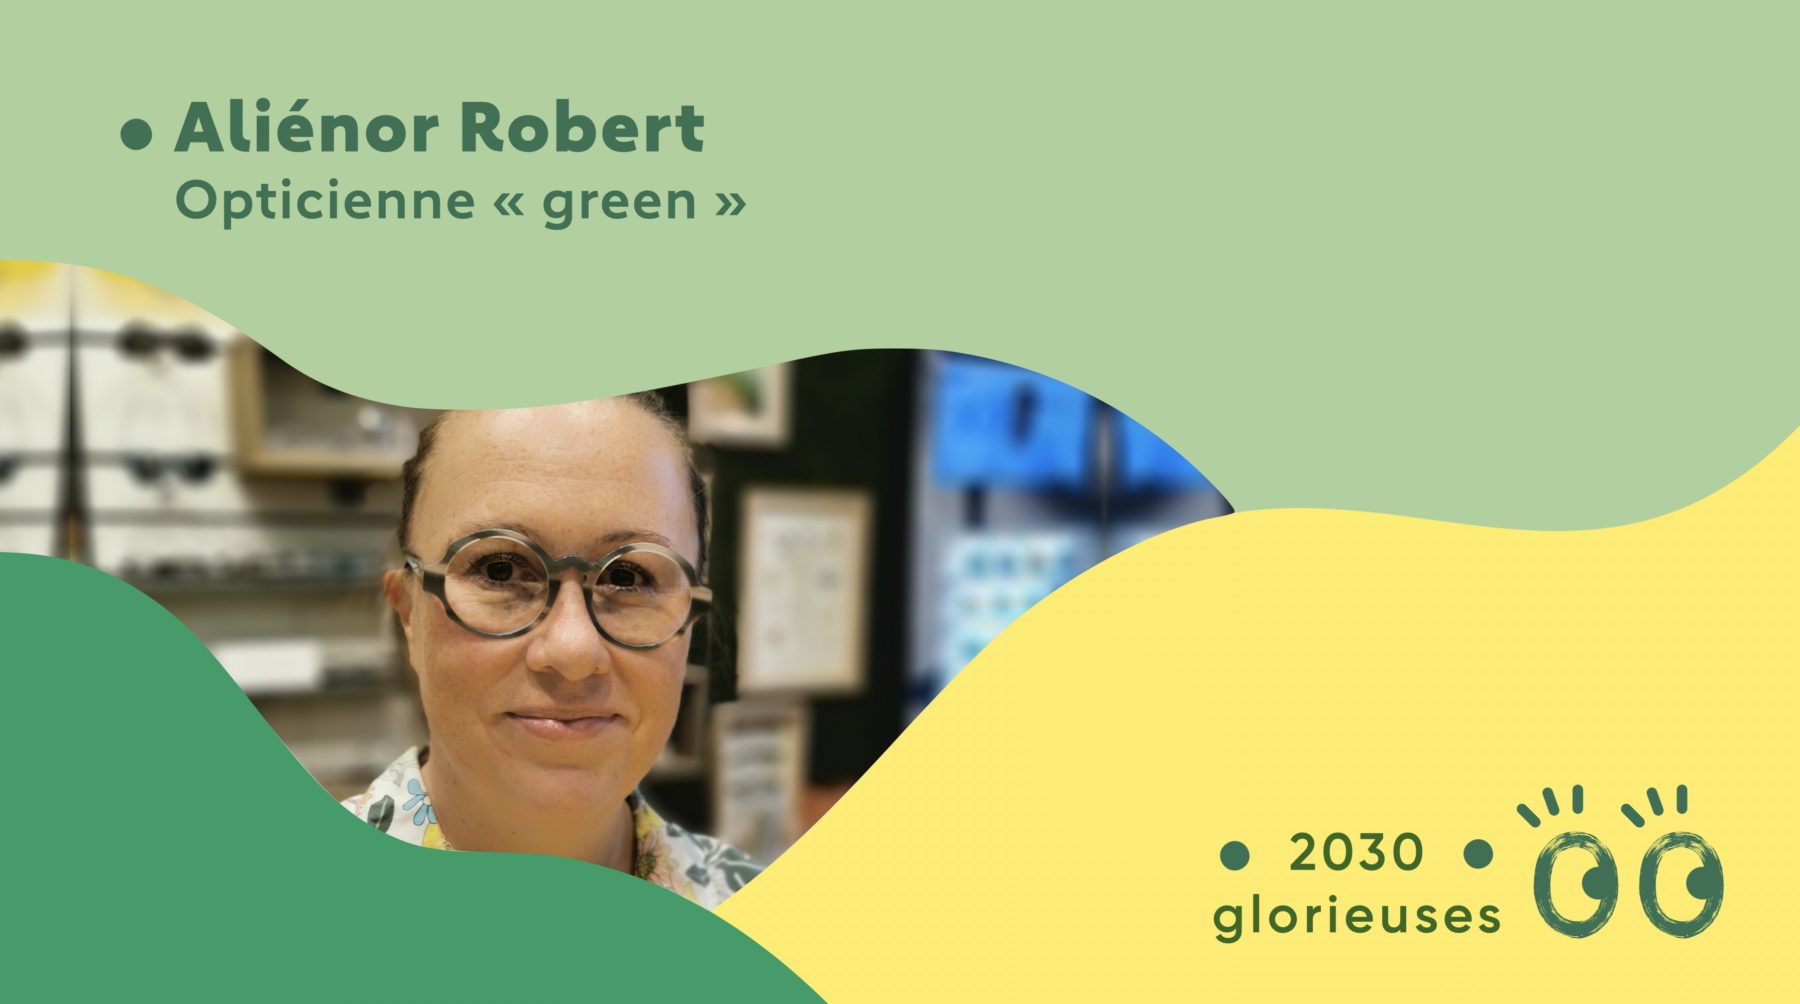 2030 Glorieuses #98 : Aliénor Robert : “On veut offrir de la transparence à nos clients pour qu'ils choisissent en conscience !"